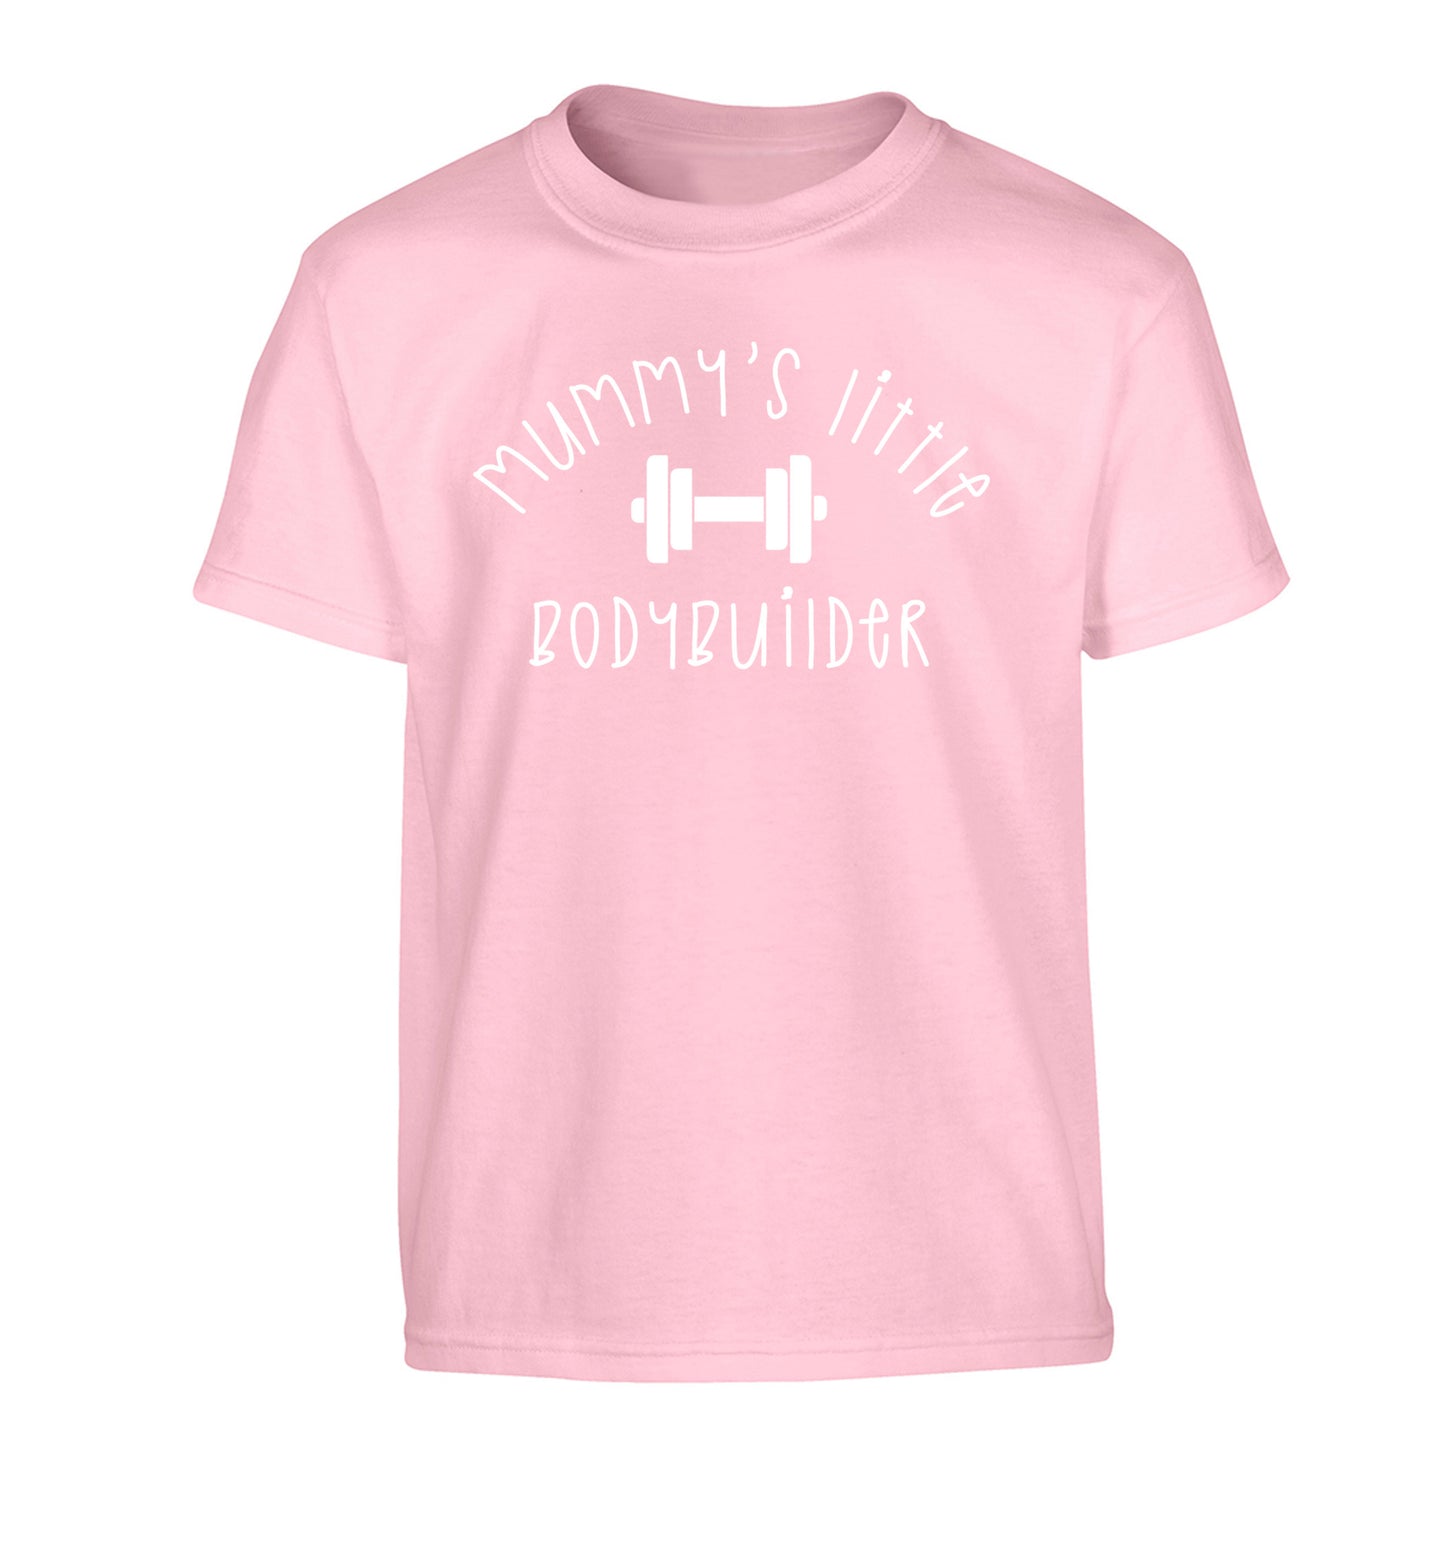 Mummy's little bodybuilder Children's light pink Tshirt 12-14 Years